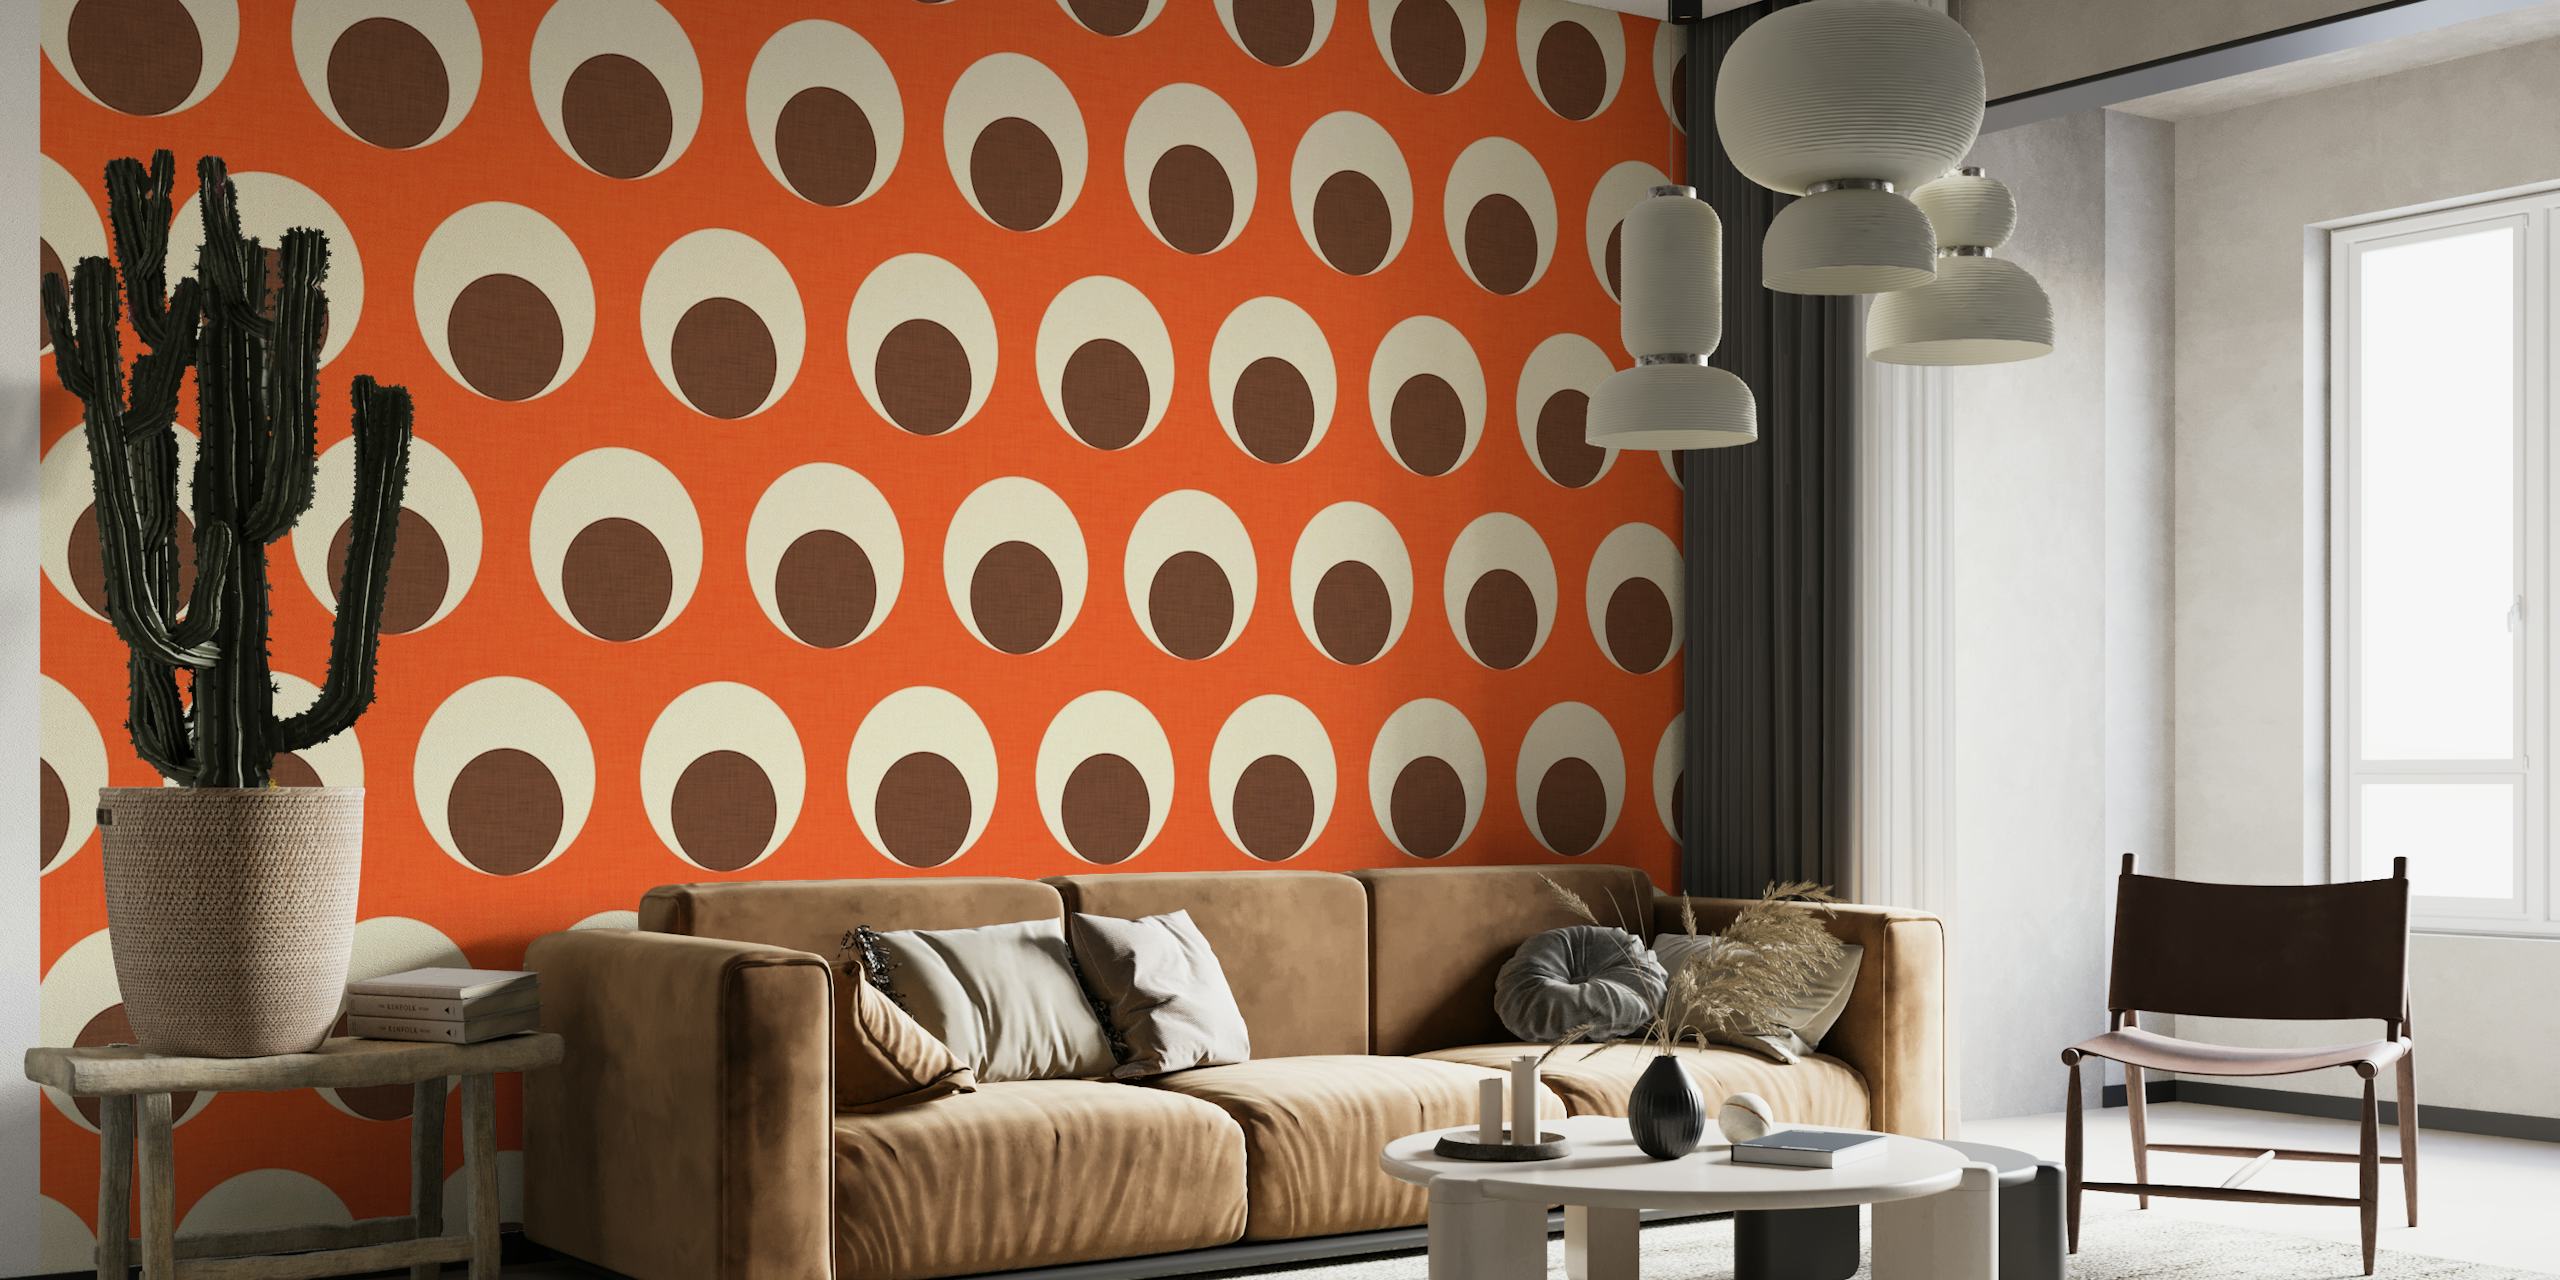 Oransje og off-white veggmaleri med punktmønster for moderne interiørdesign